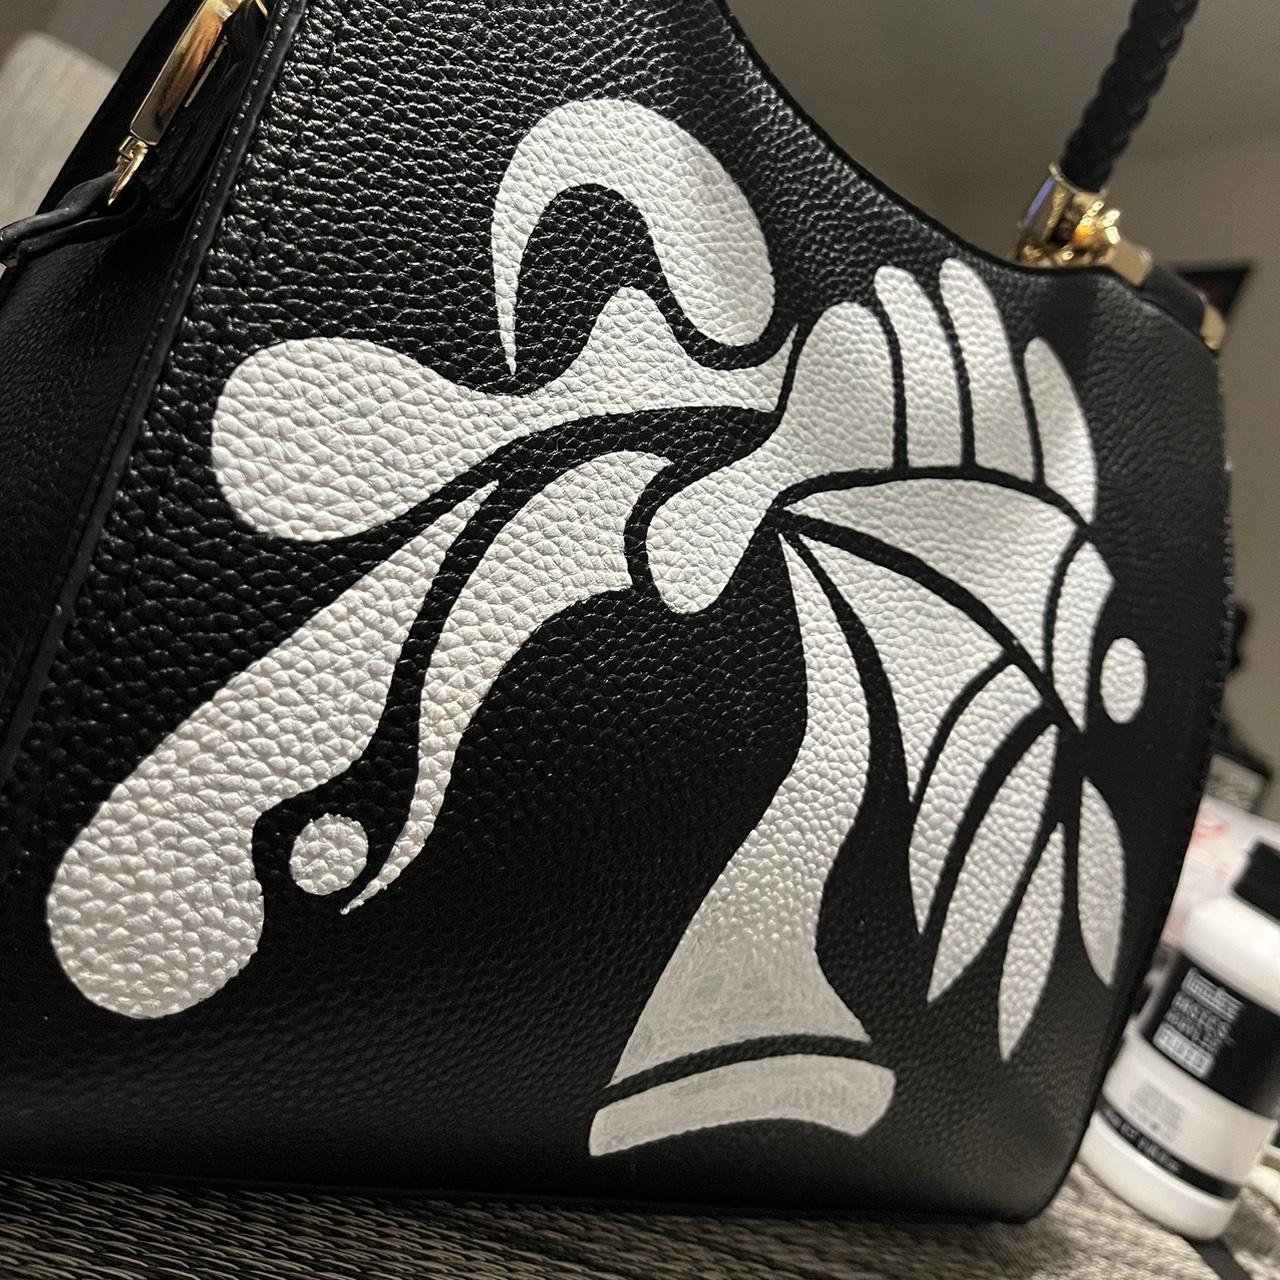 custom painted purse